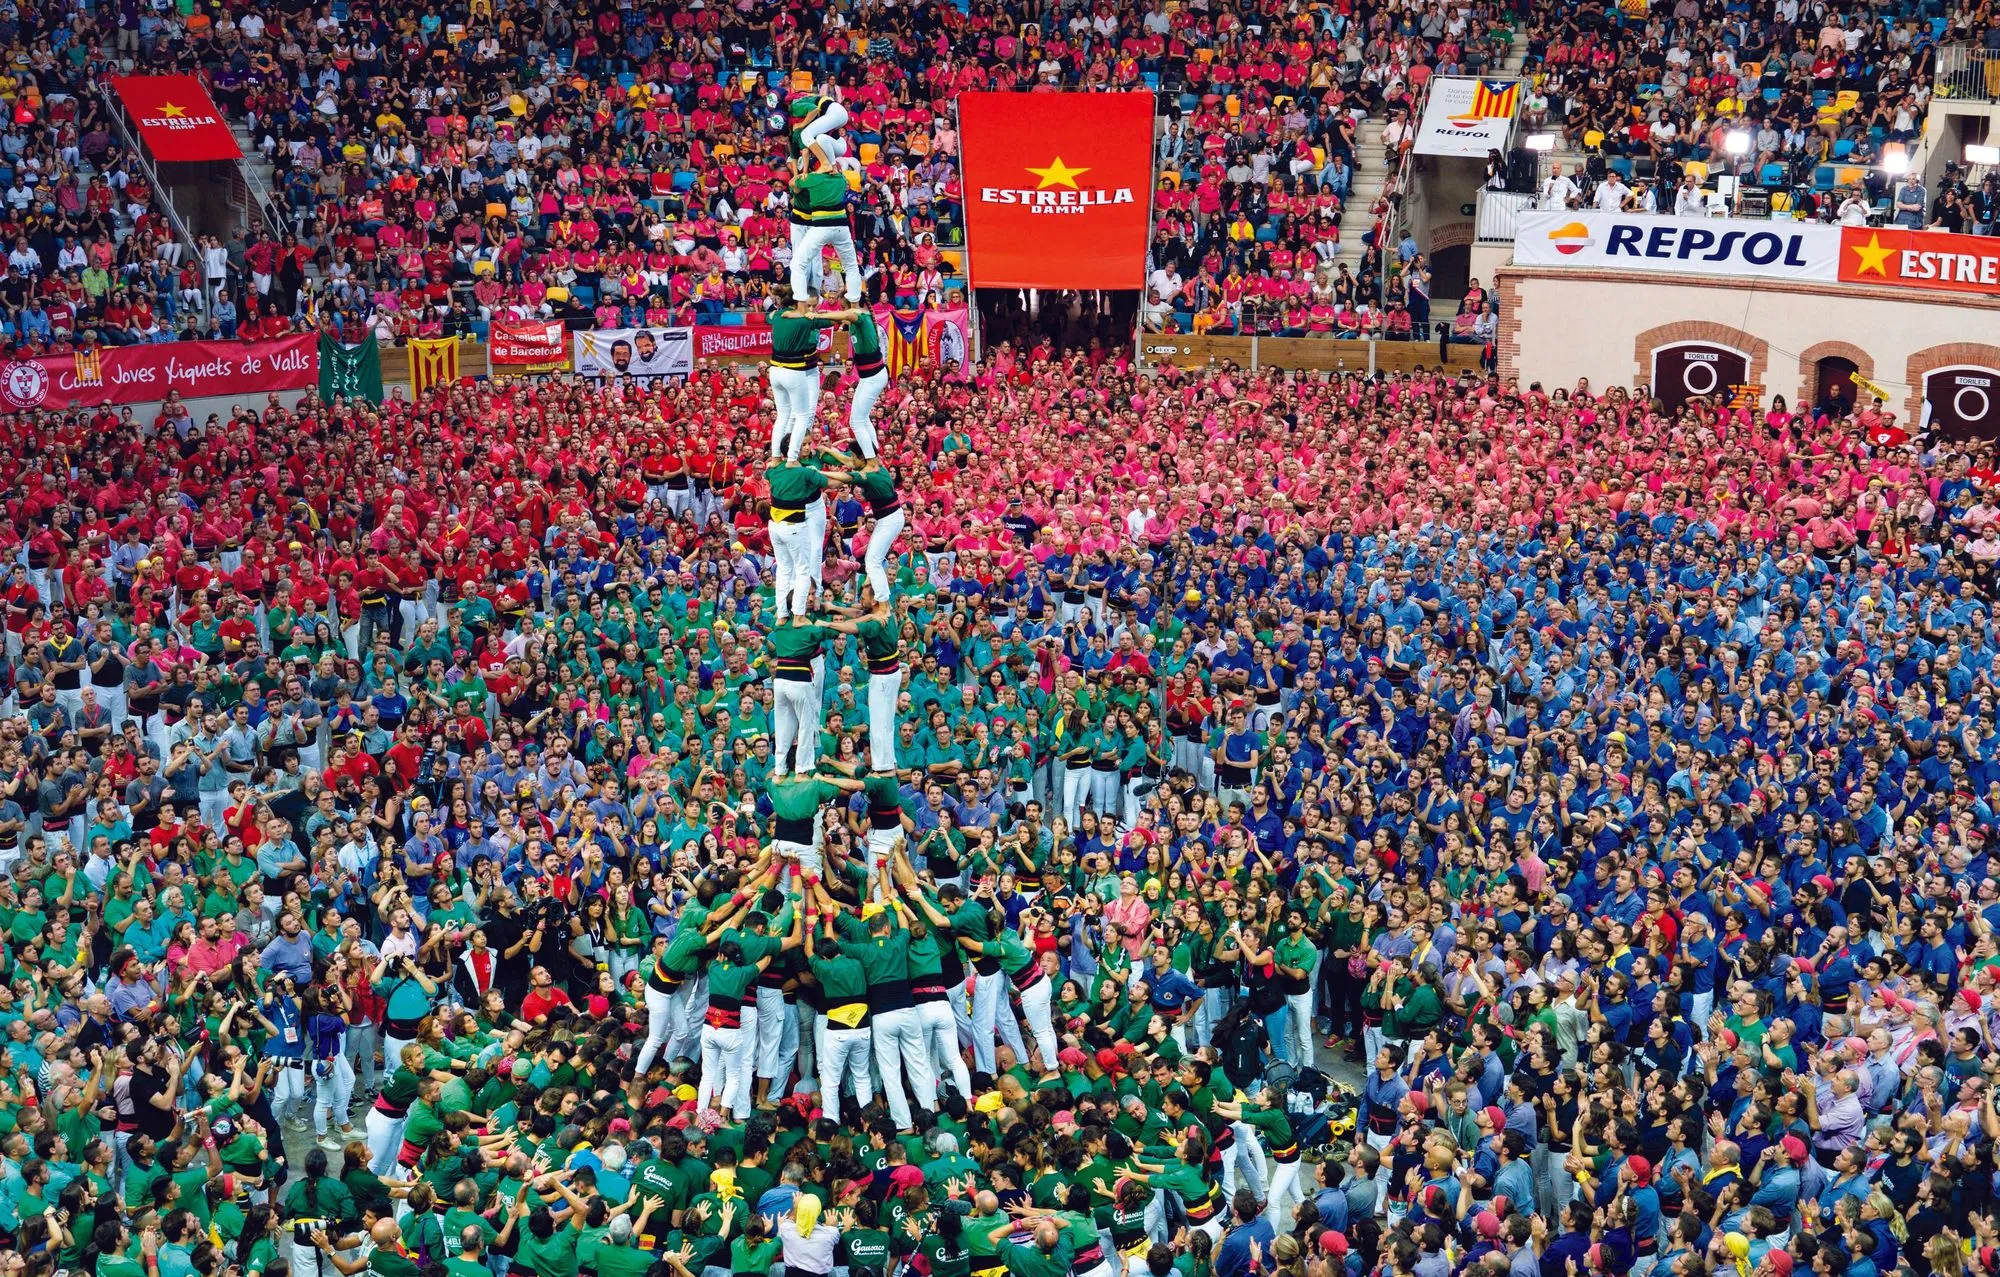 Concurso de castells (torres humanas) de Tarragona, 2016.